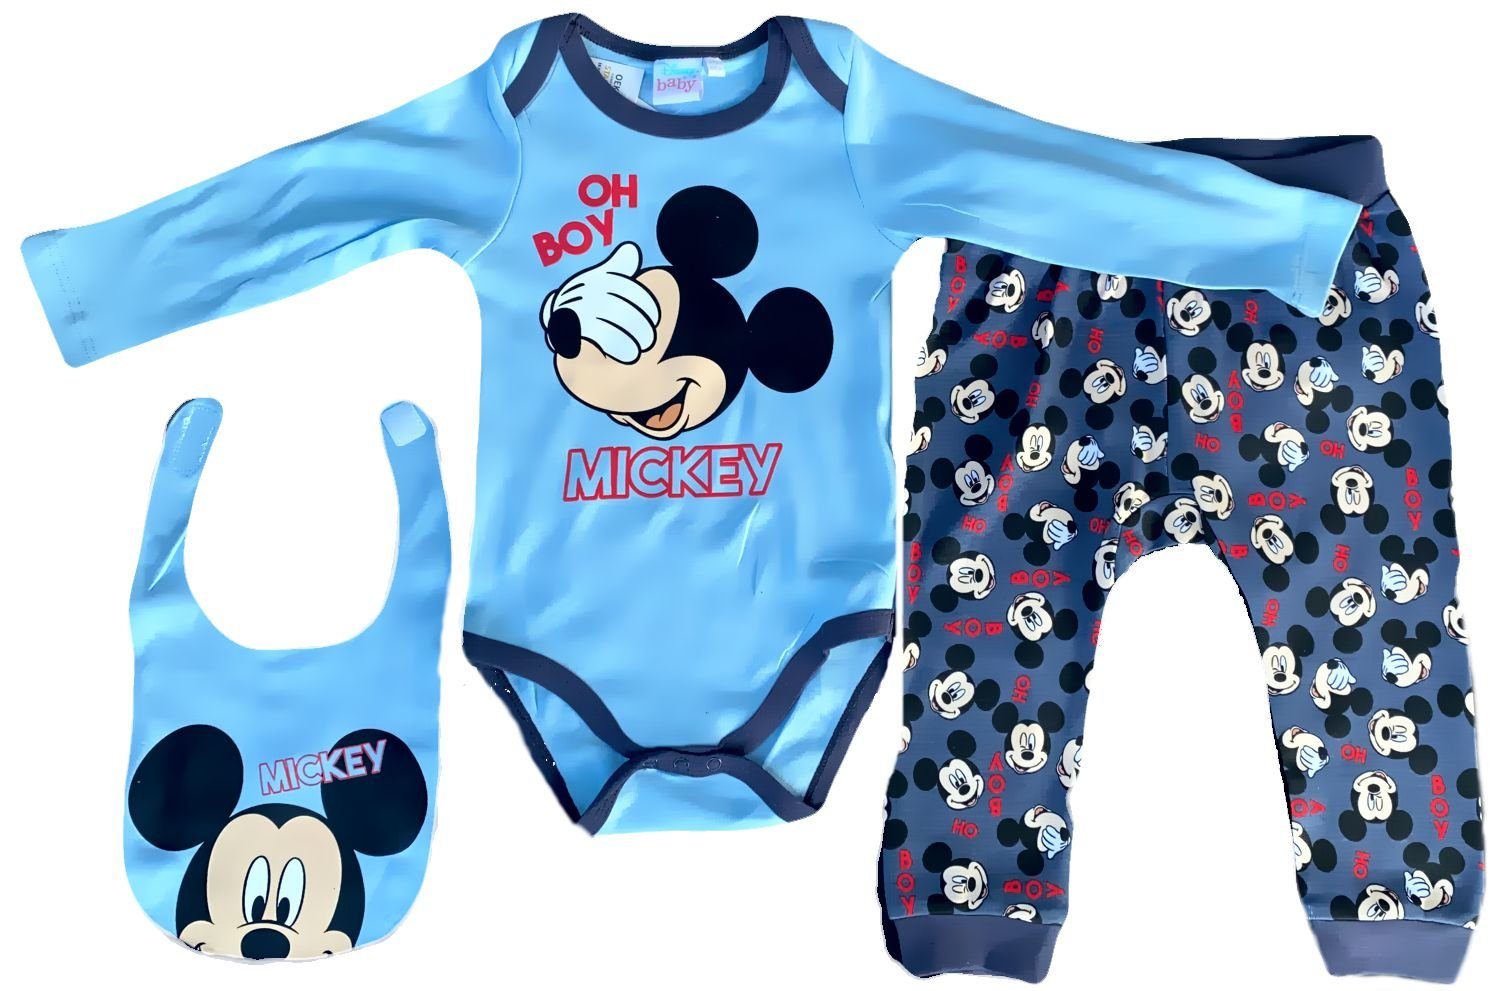 Disney Mickey Mouse Baby Jungen Langarmshirt blau meliert Gr 62 68  NEU 